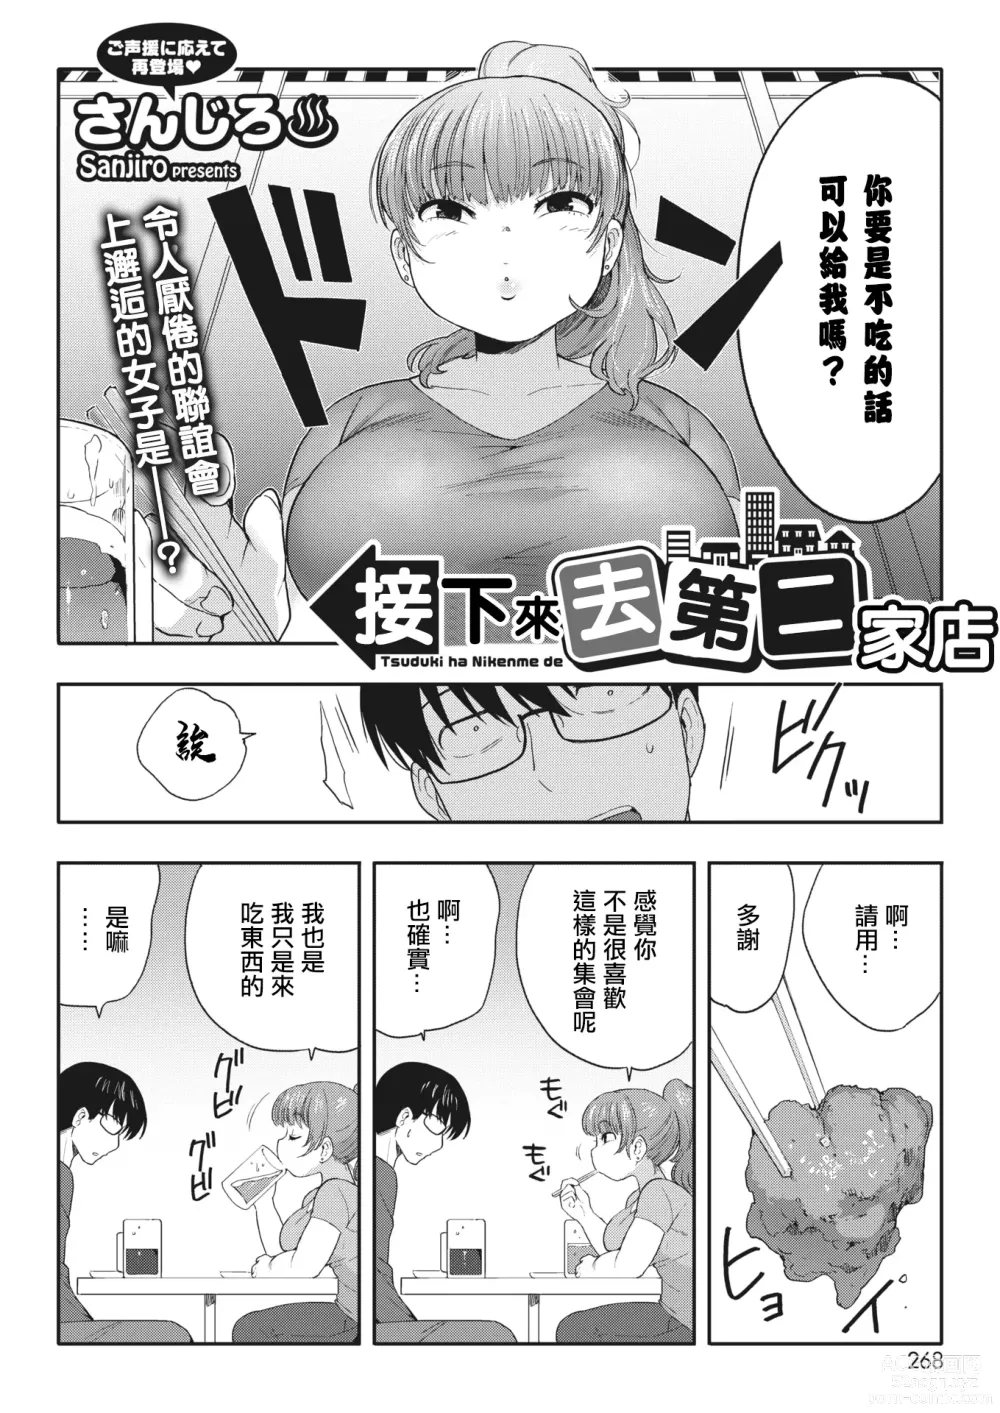 Page 3 of manga 接下來去第二家店